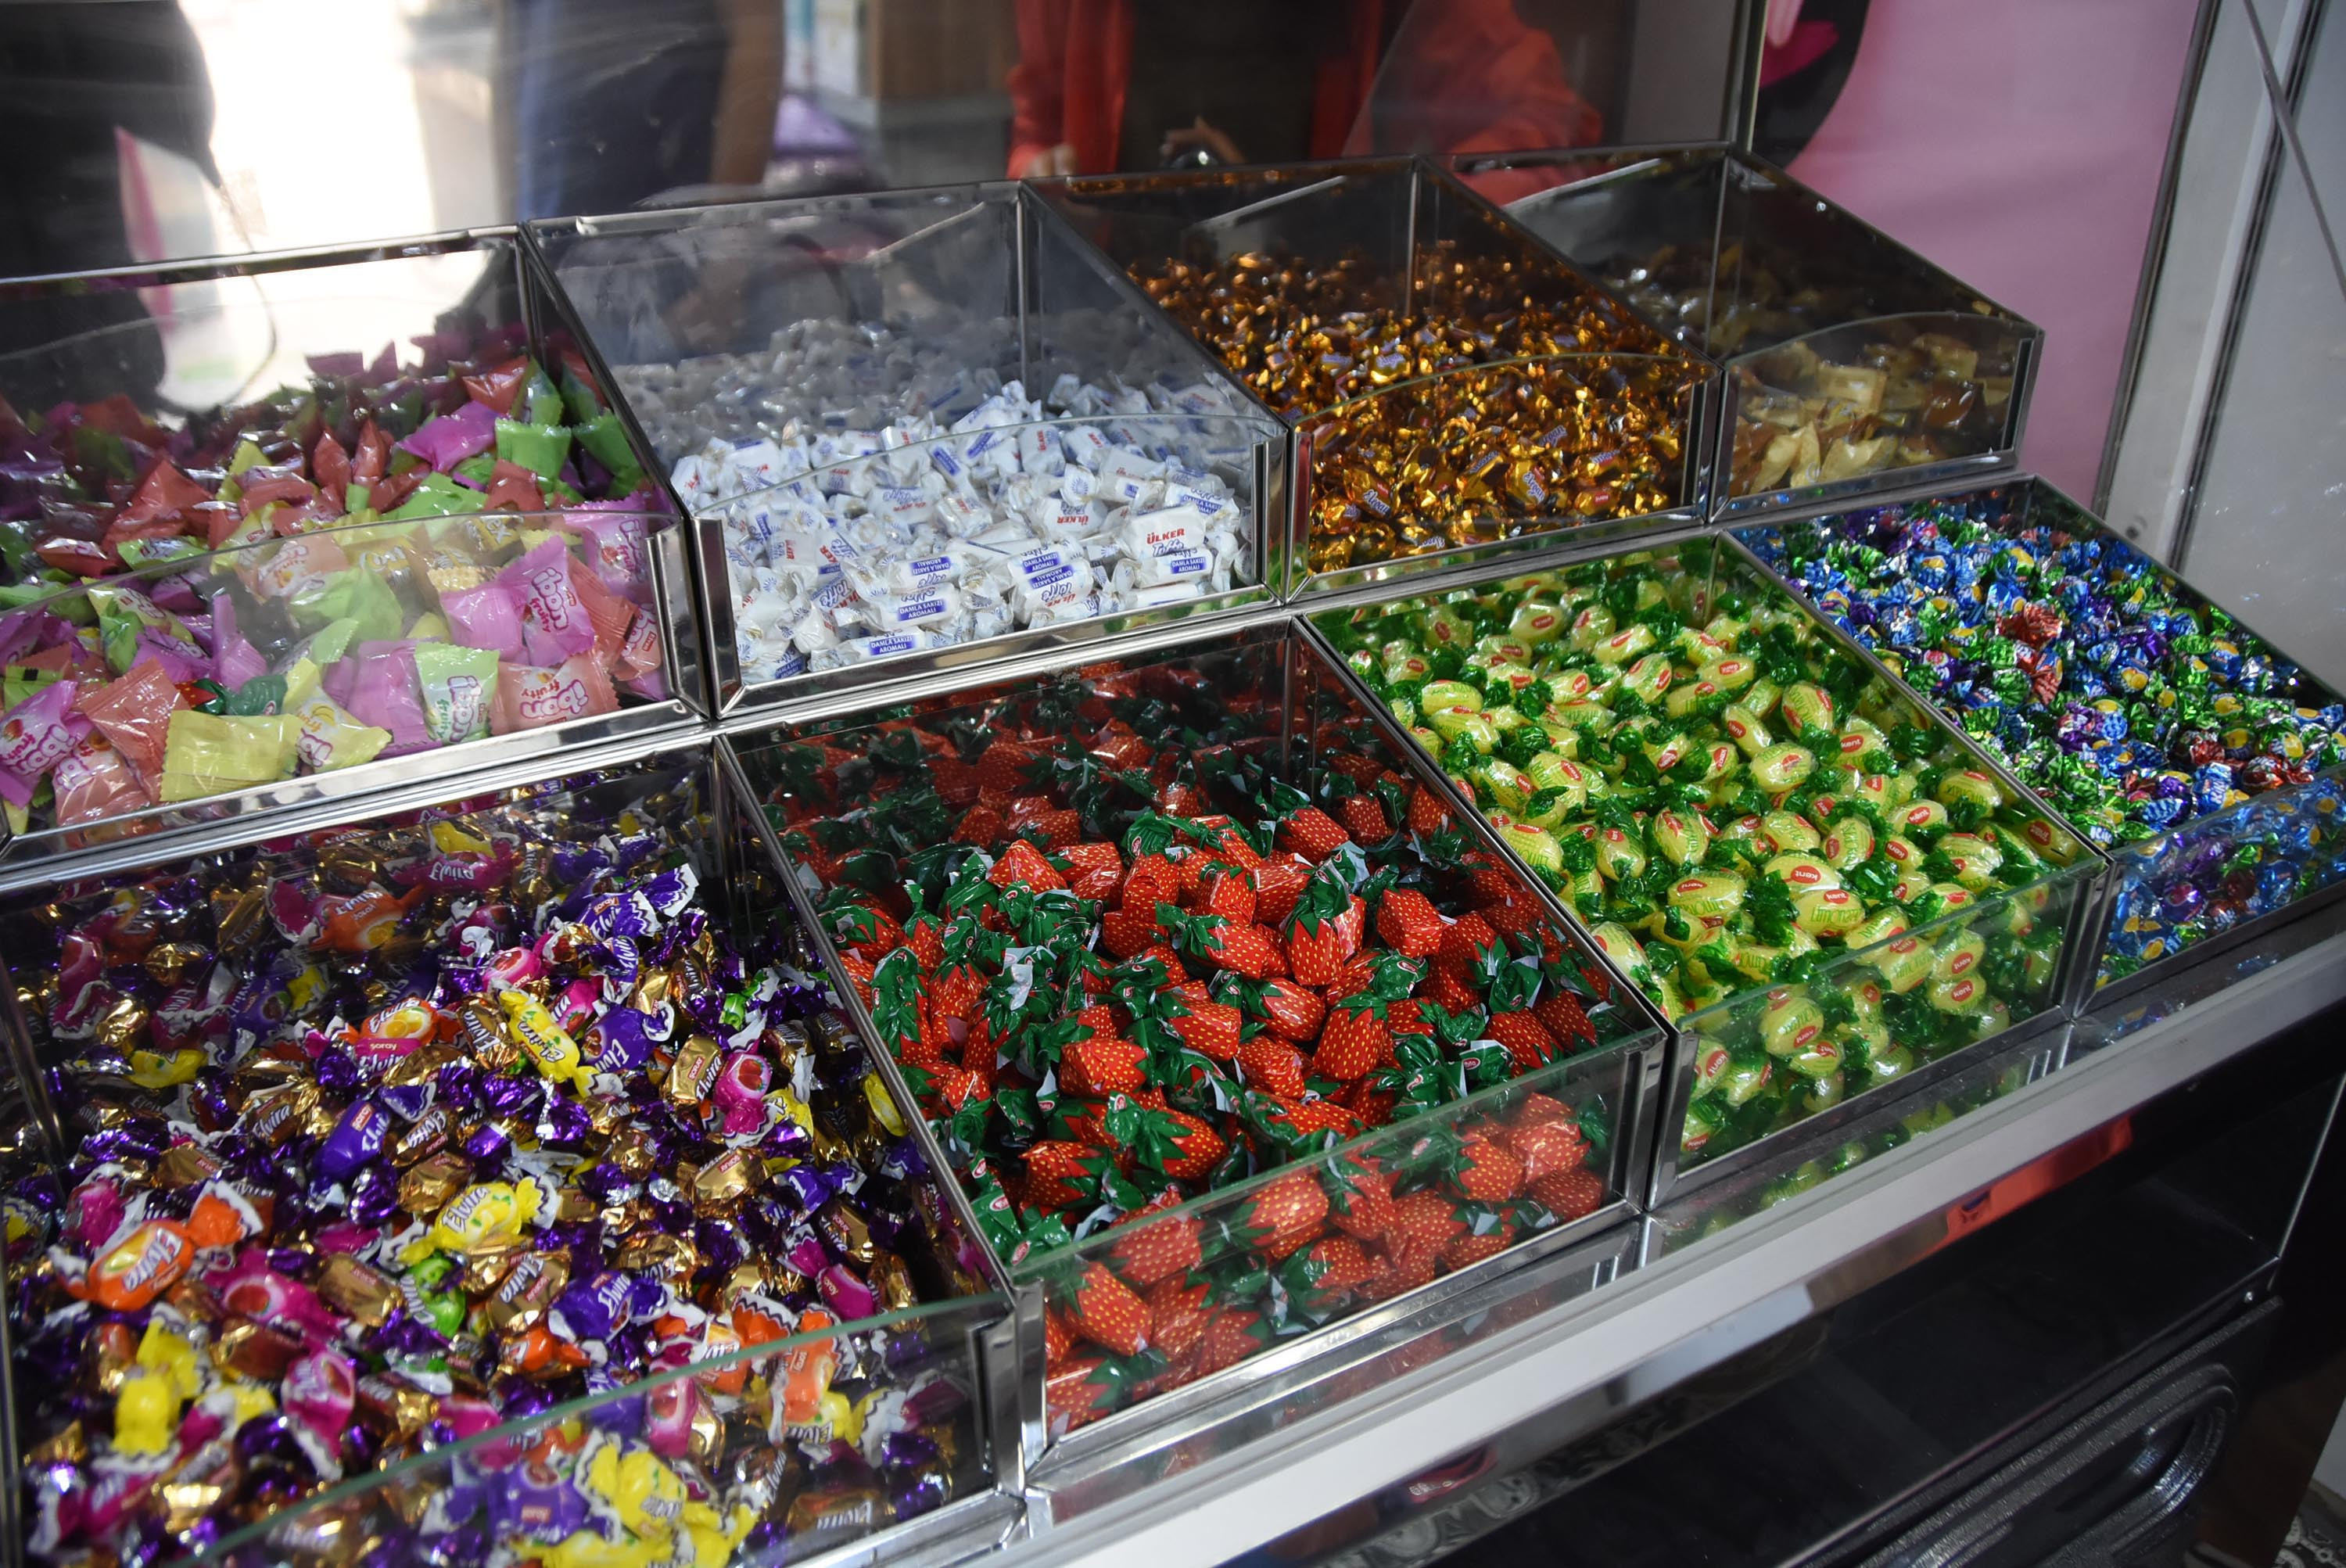 Ramazan Bayramı’nda şeker alacaklar DİKKAT! Bayram şekeri fiyatları 300 TL’ye dayandı